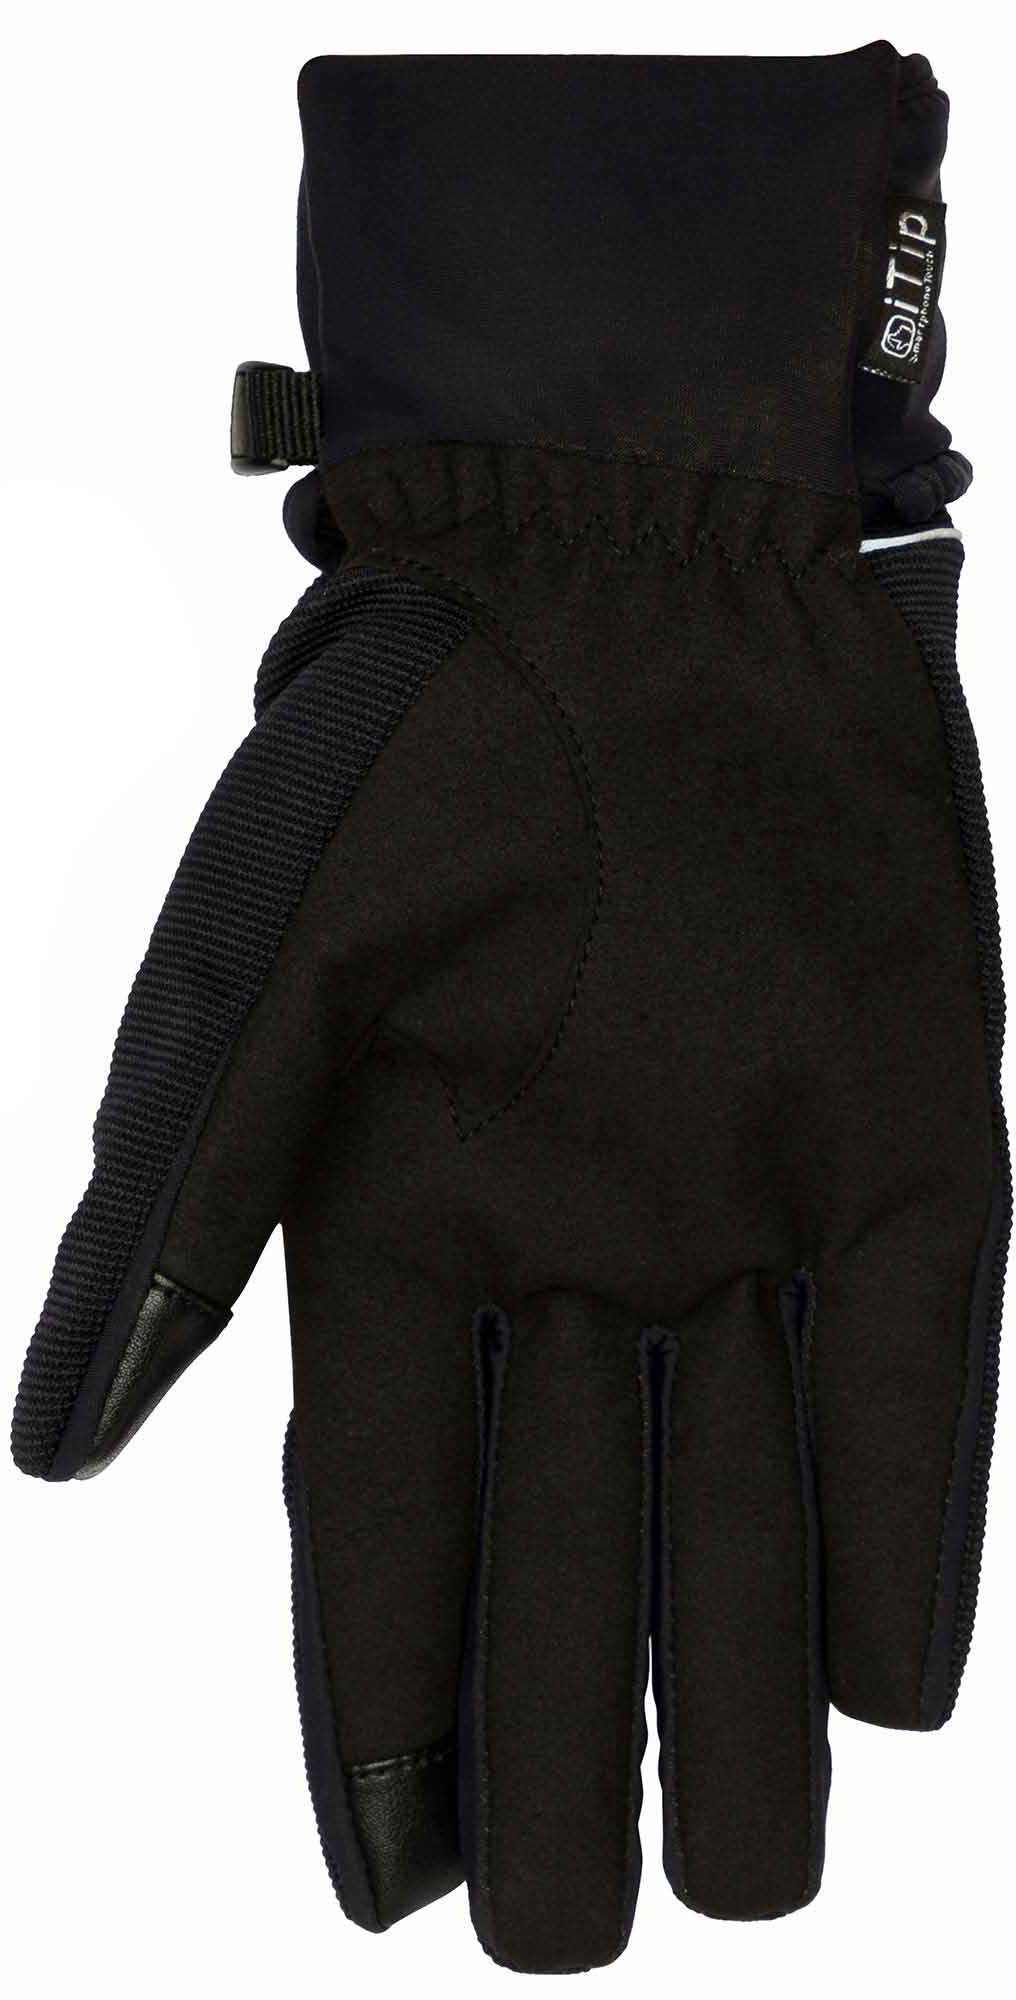 Ski gloves 2in1